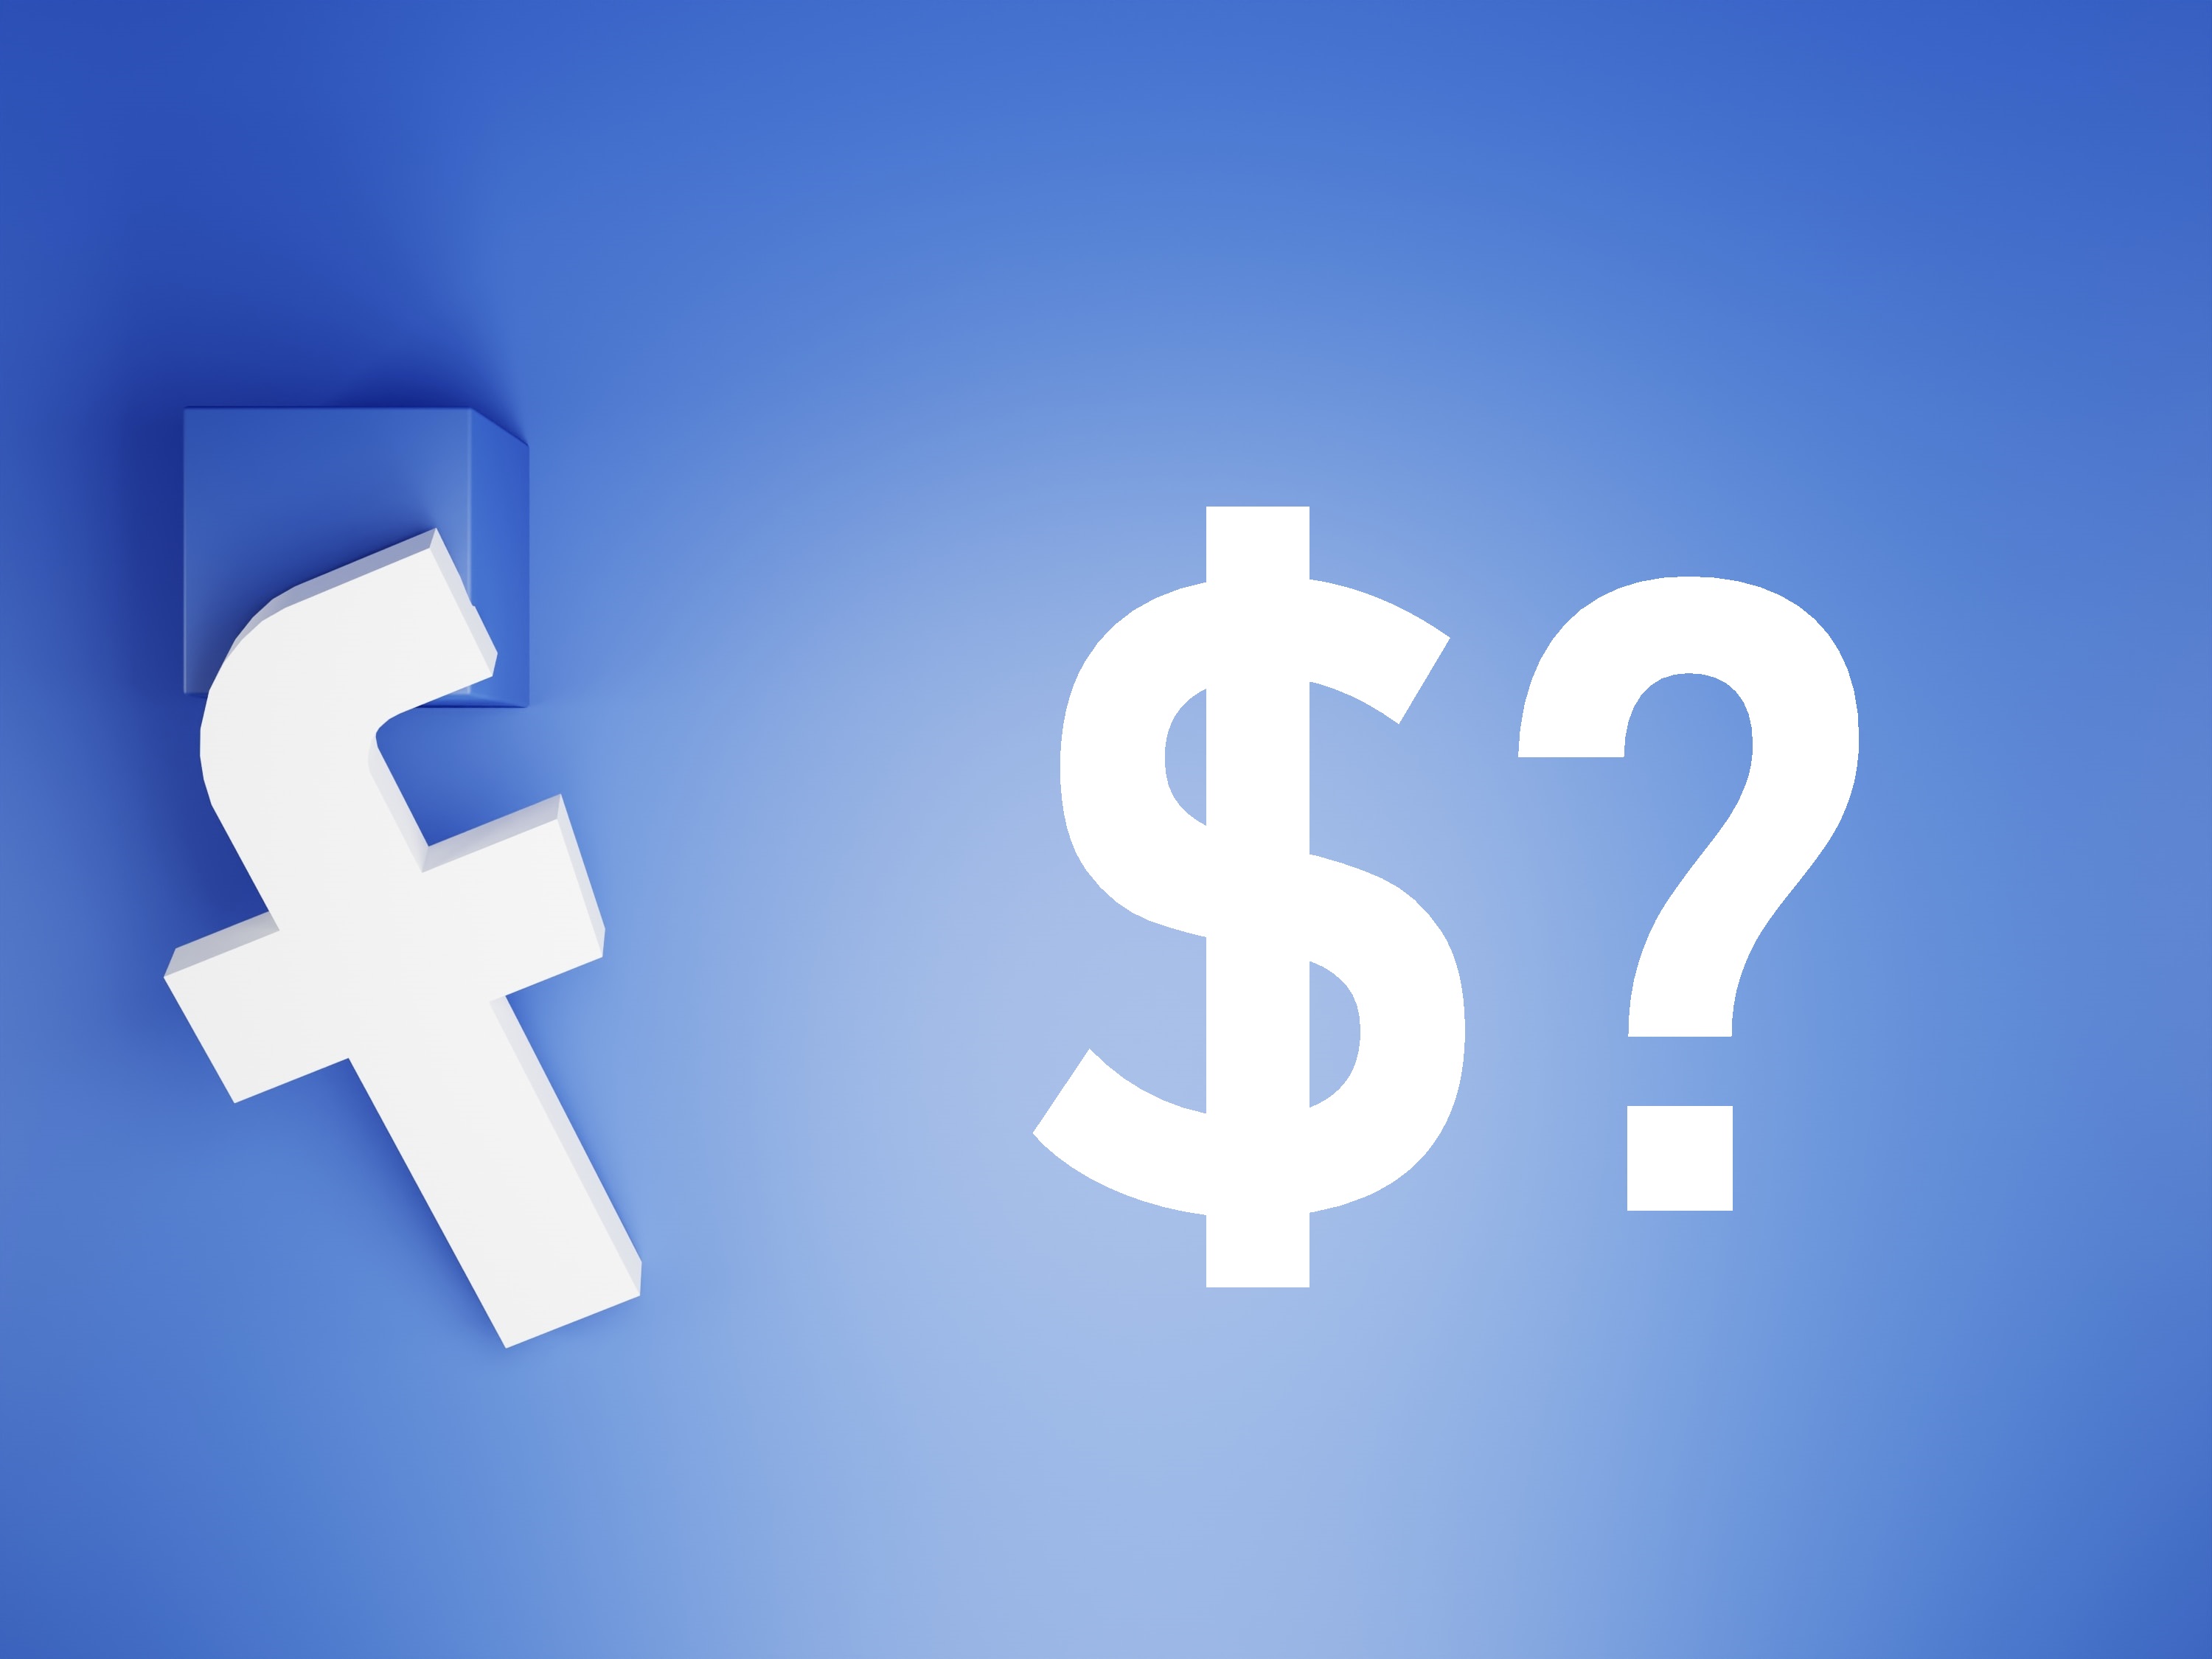 زائف: فيسبوك لم تعلن عن ضريبة شهرية للمجموعات التي يزيد عدد أعضائها على 20 ألف